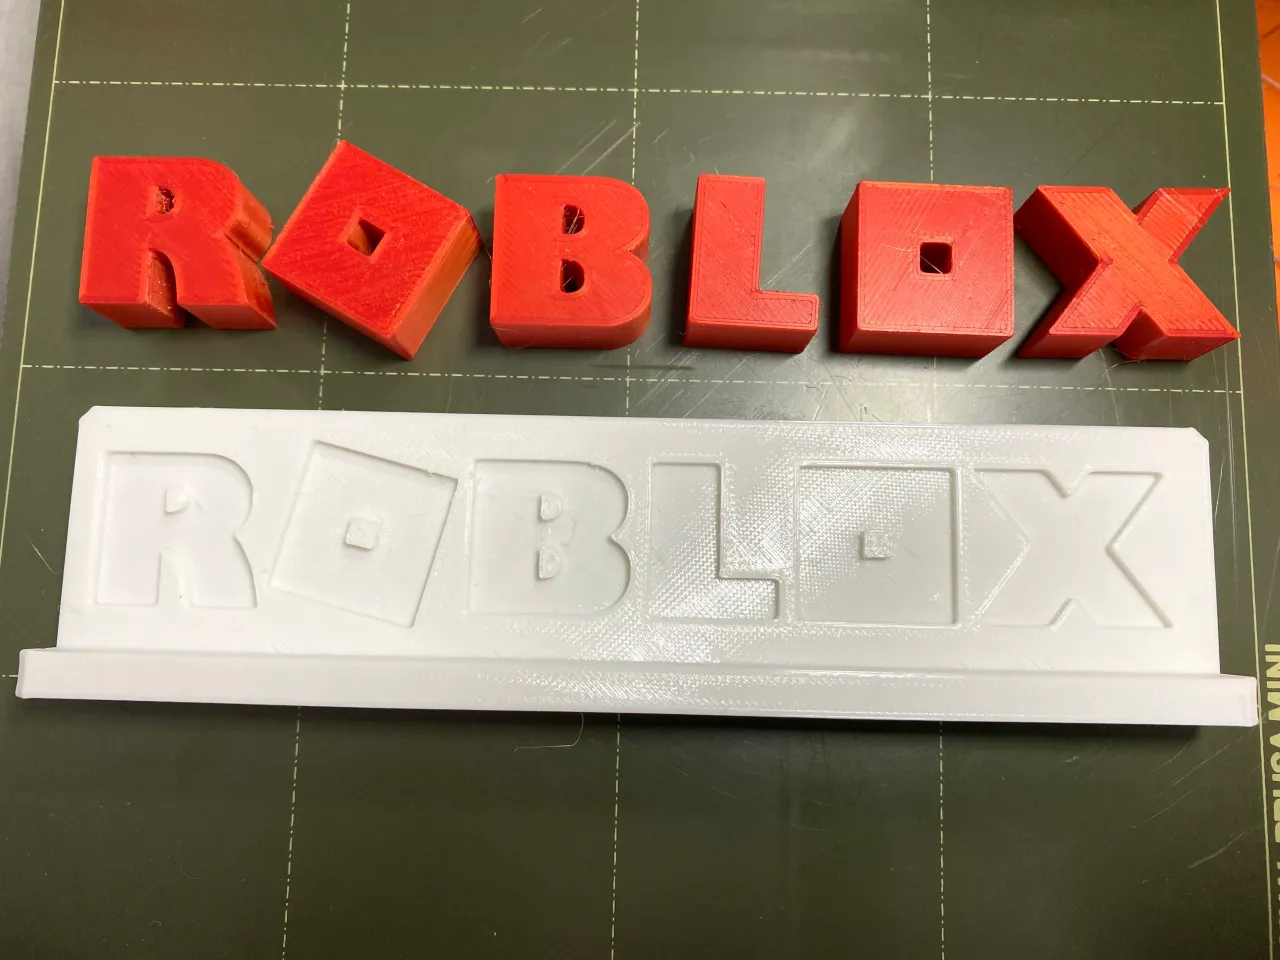 Roblox Icon by Crisp Prints, Download free STL model